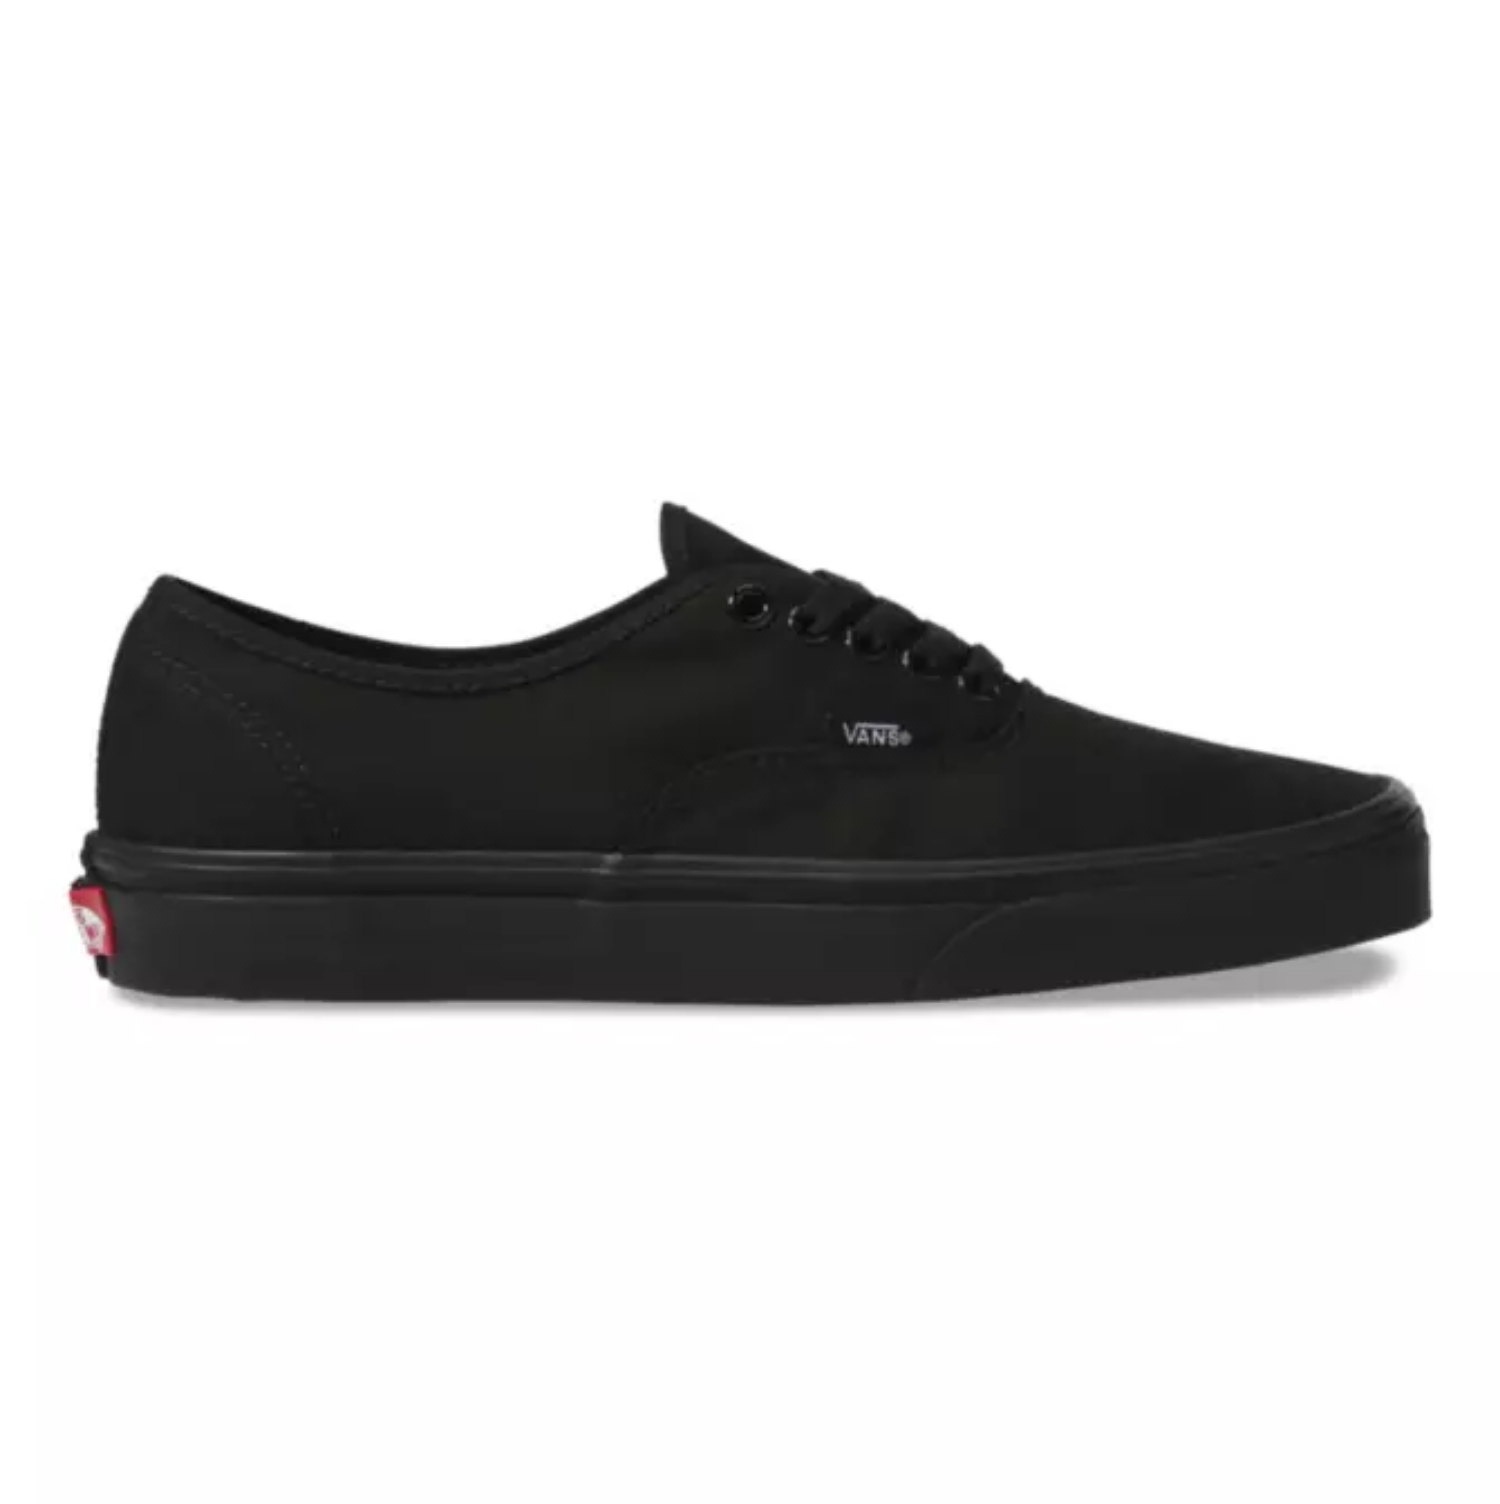 Vans Black/Black Skate Shoes